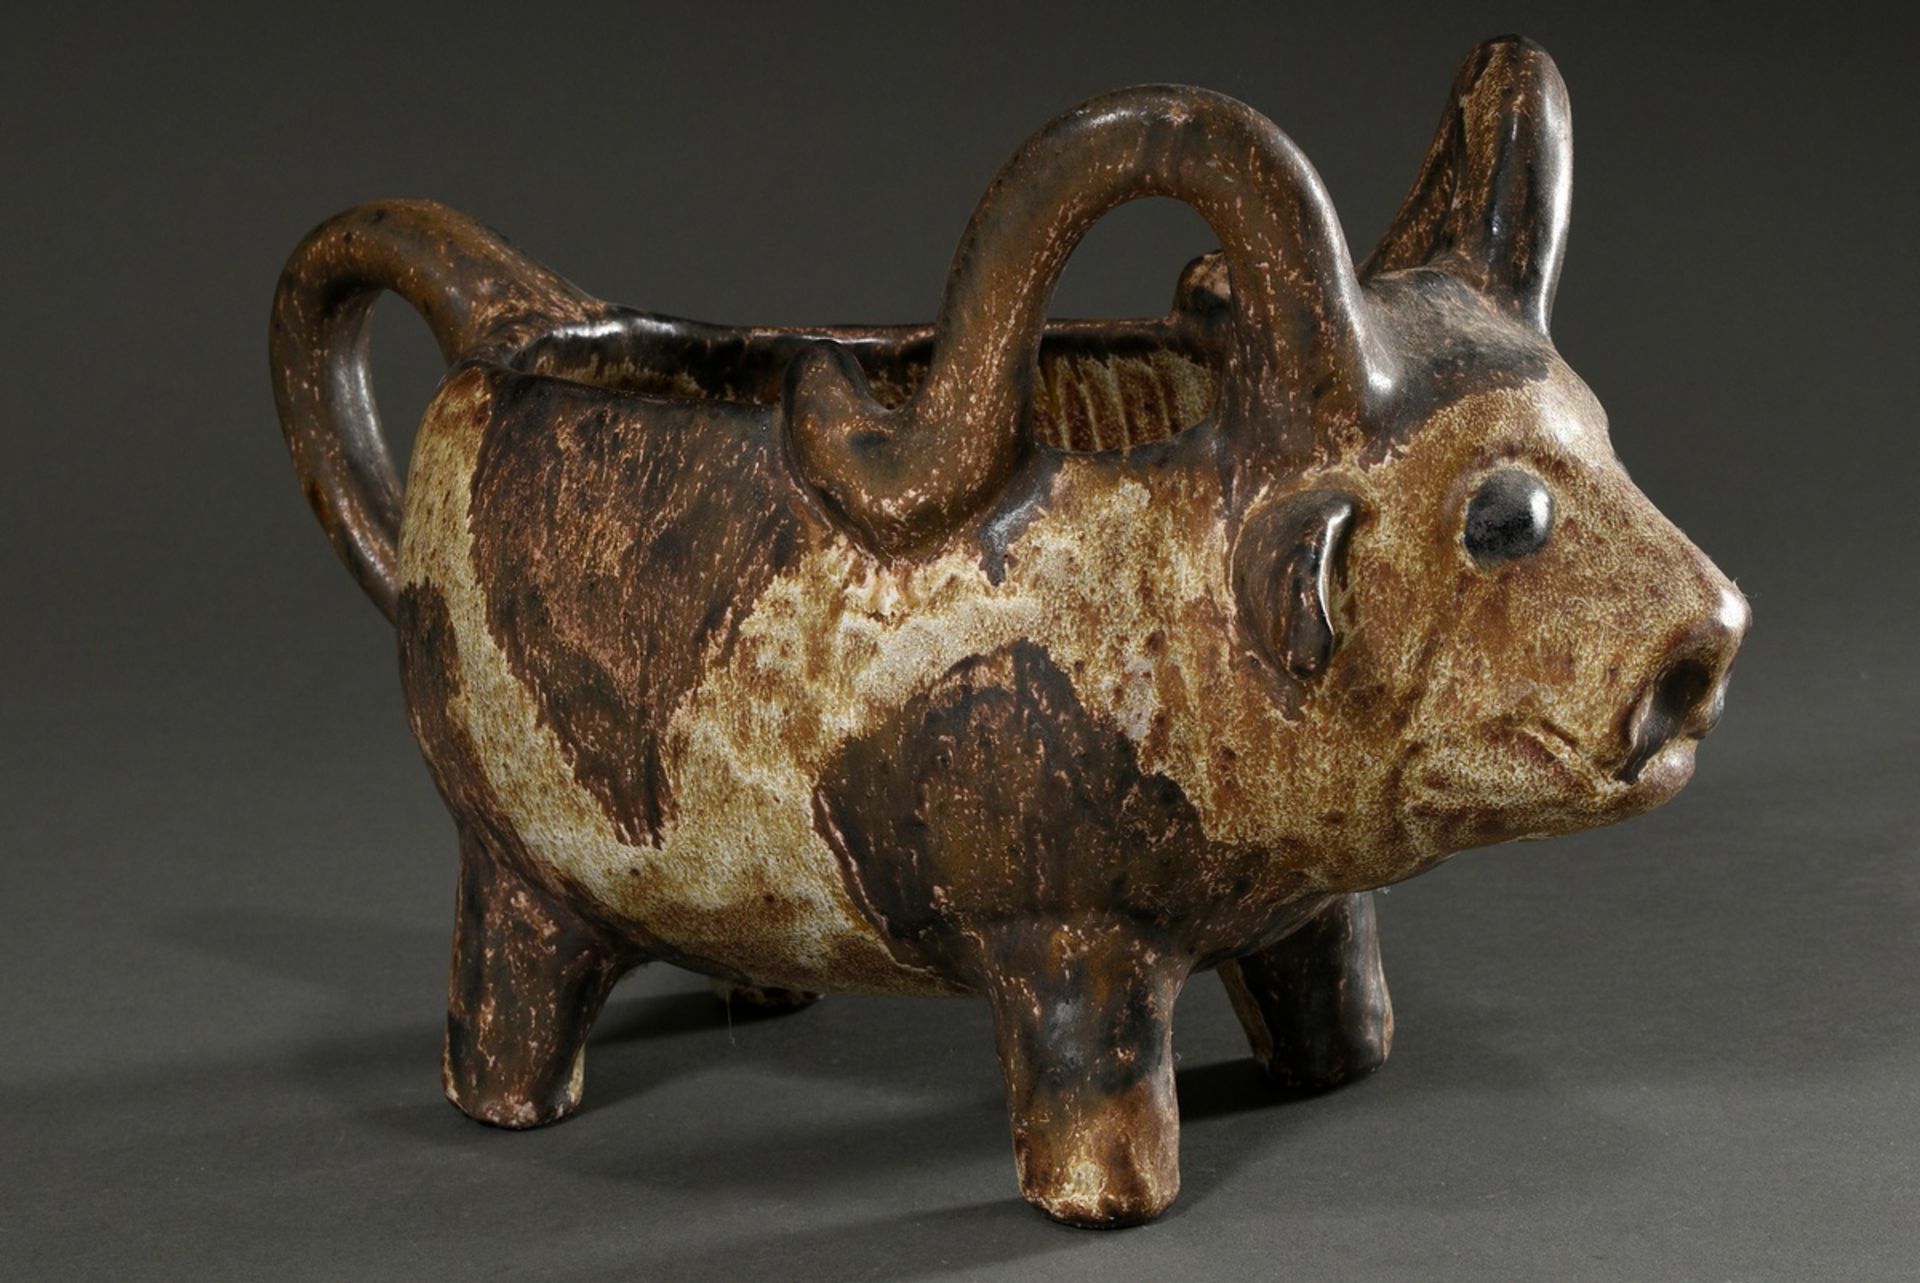 Maetzel, Monika (1917-2010) studio ceramics vessel in animal form "bull", ceramic white/brown glaze - Image 3 of 6